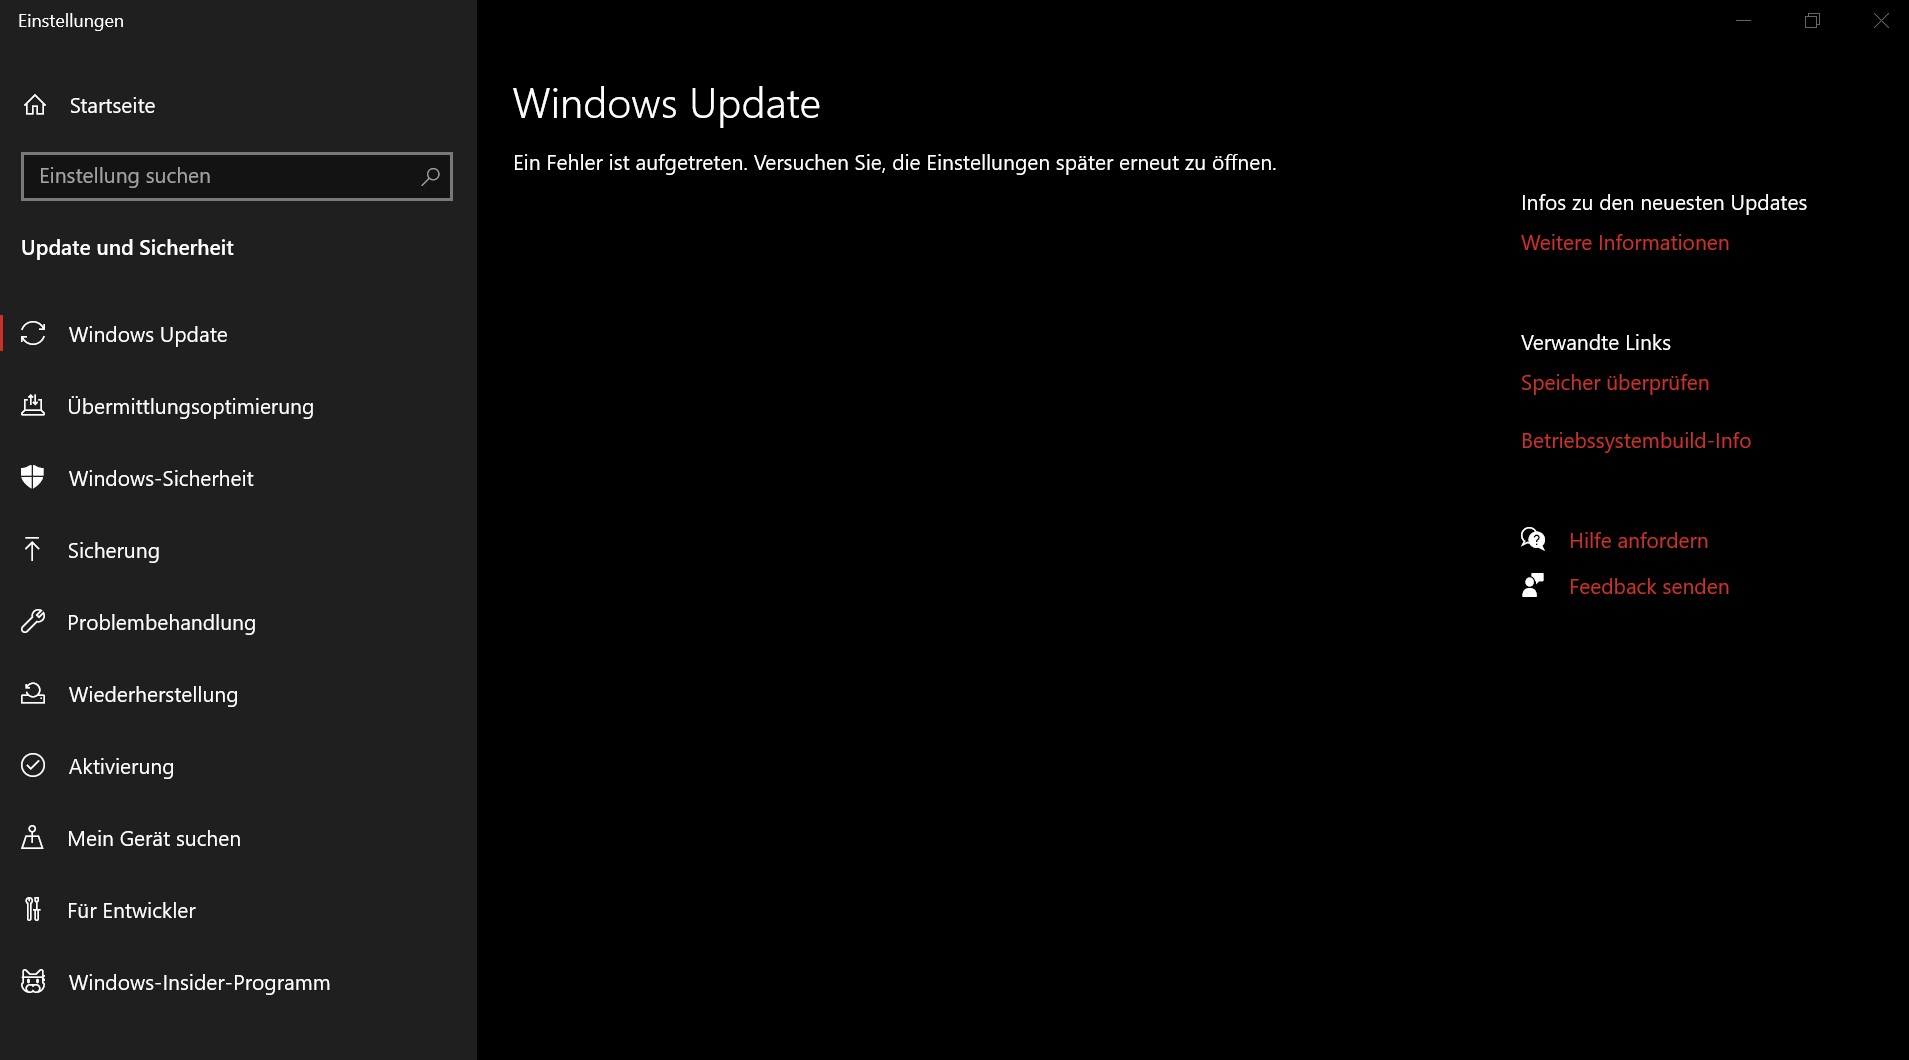 Windows 10 Update version 20H2